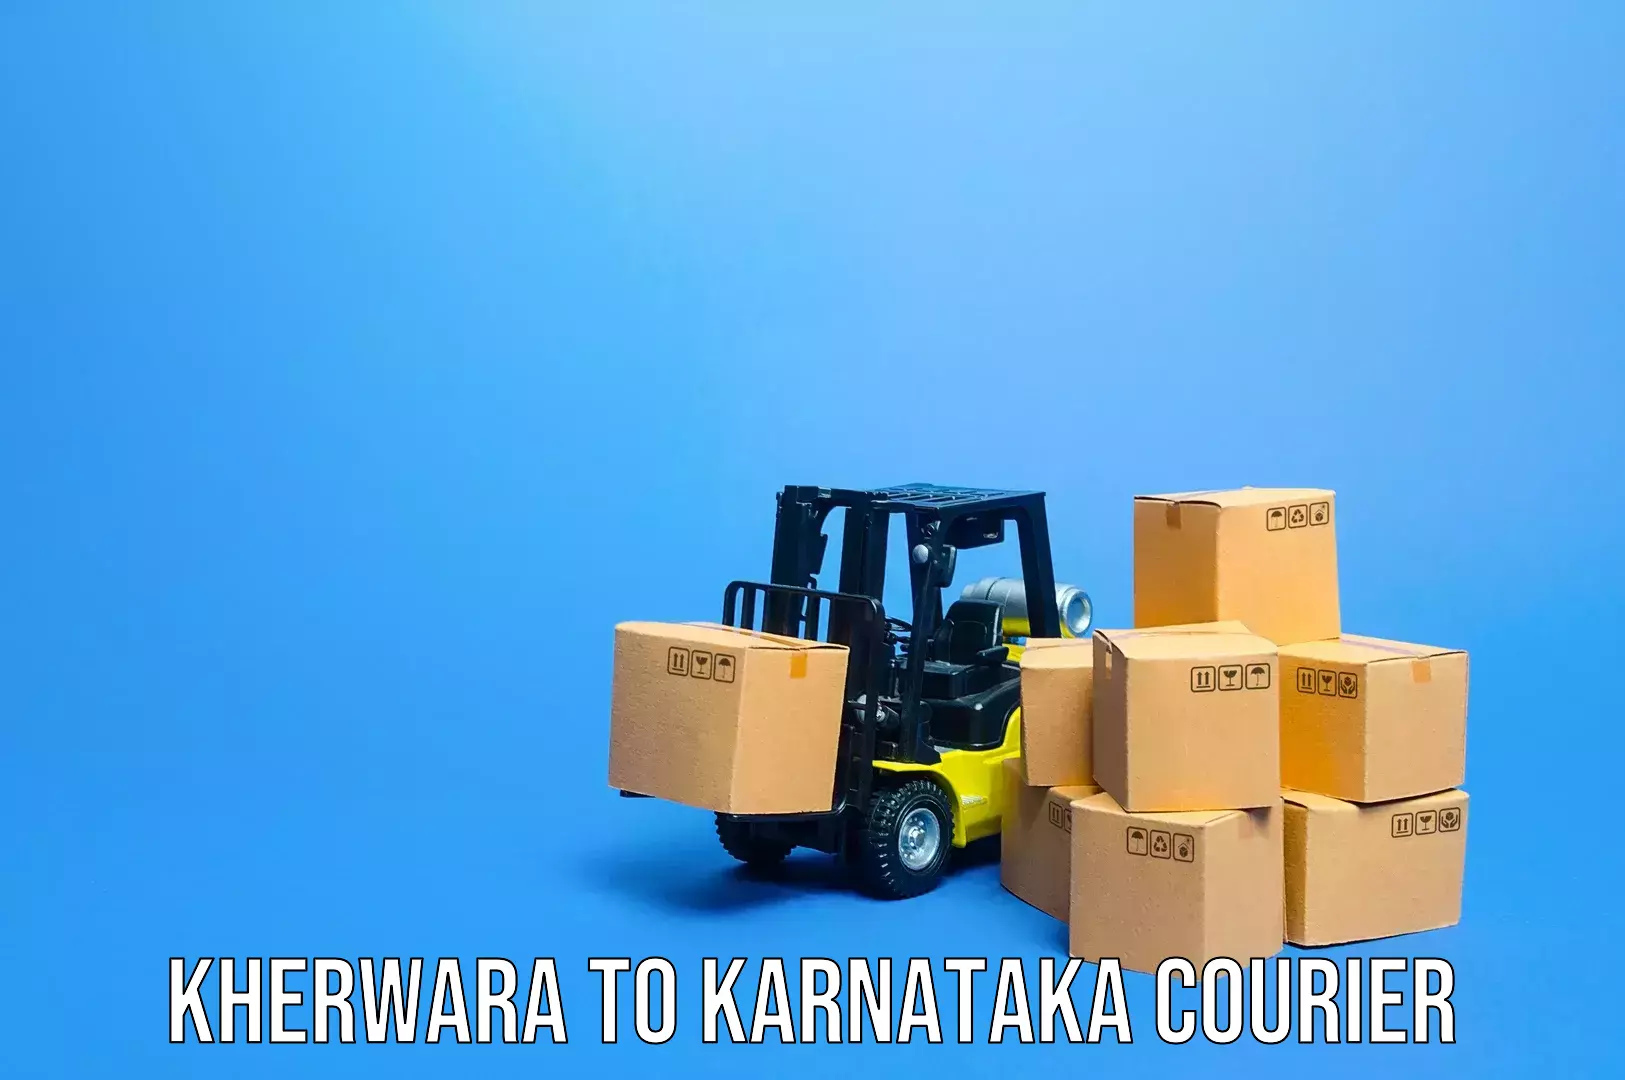 Baggage transport innovation Kherwara to Karnataka